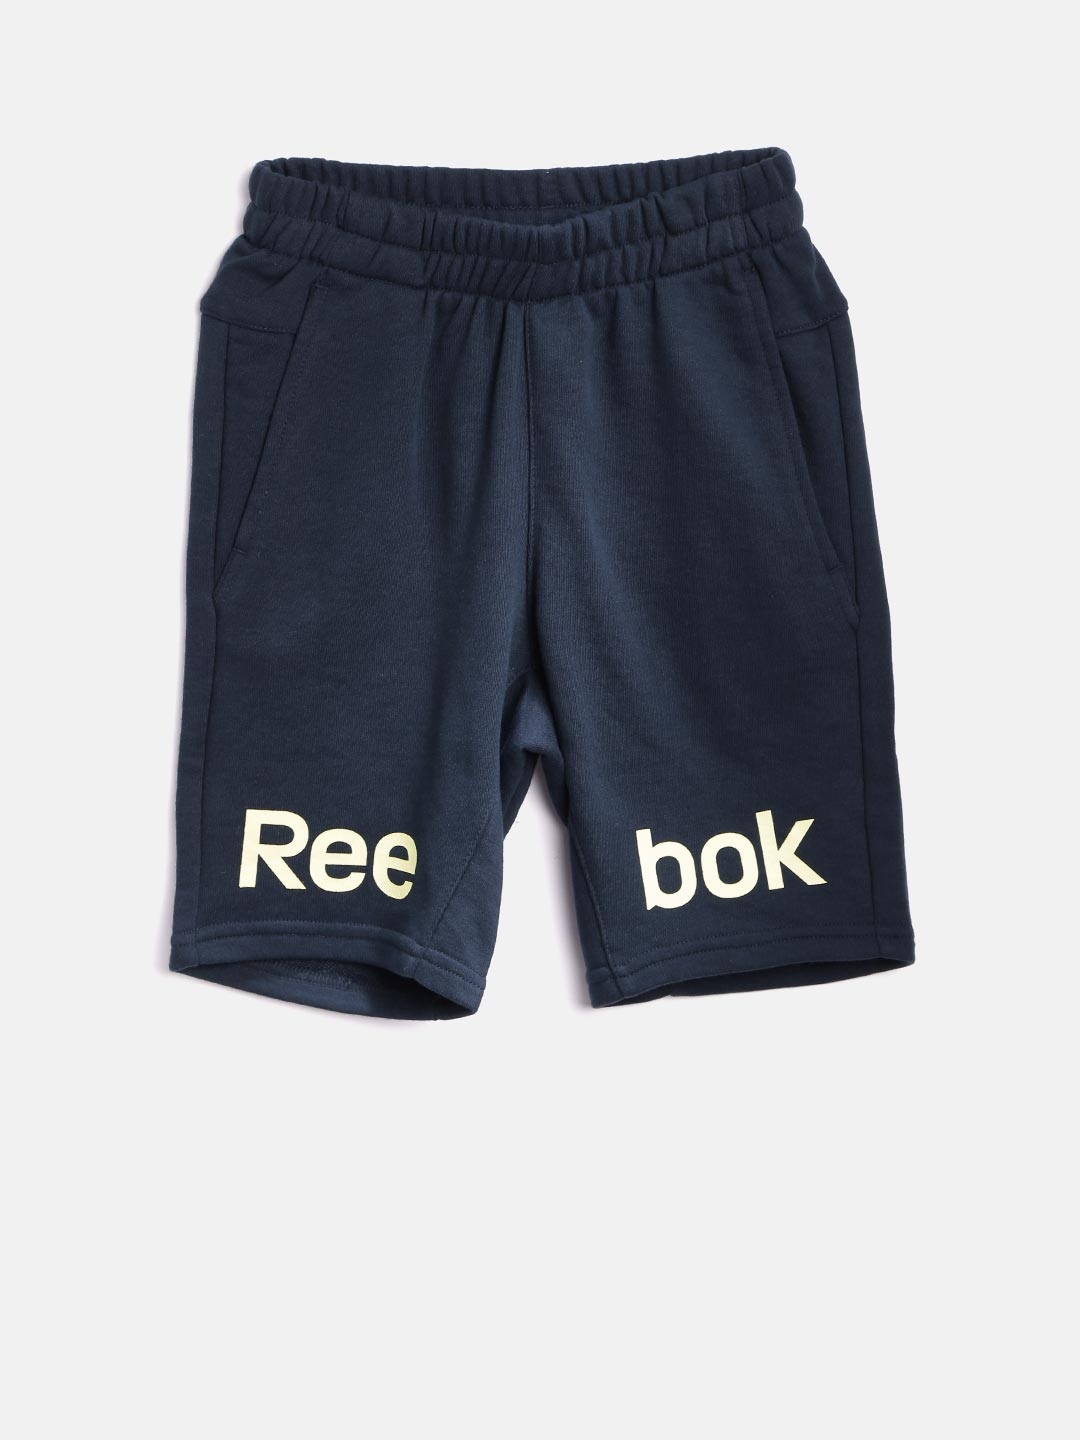 reebok boys shorts